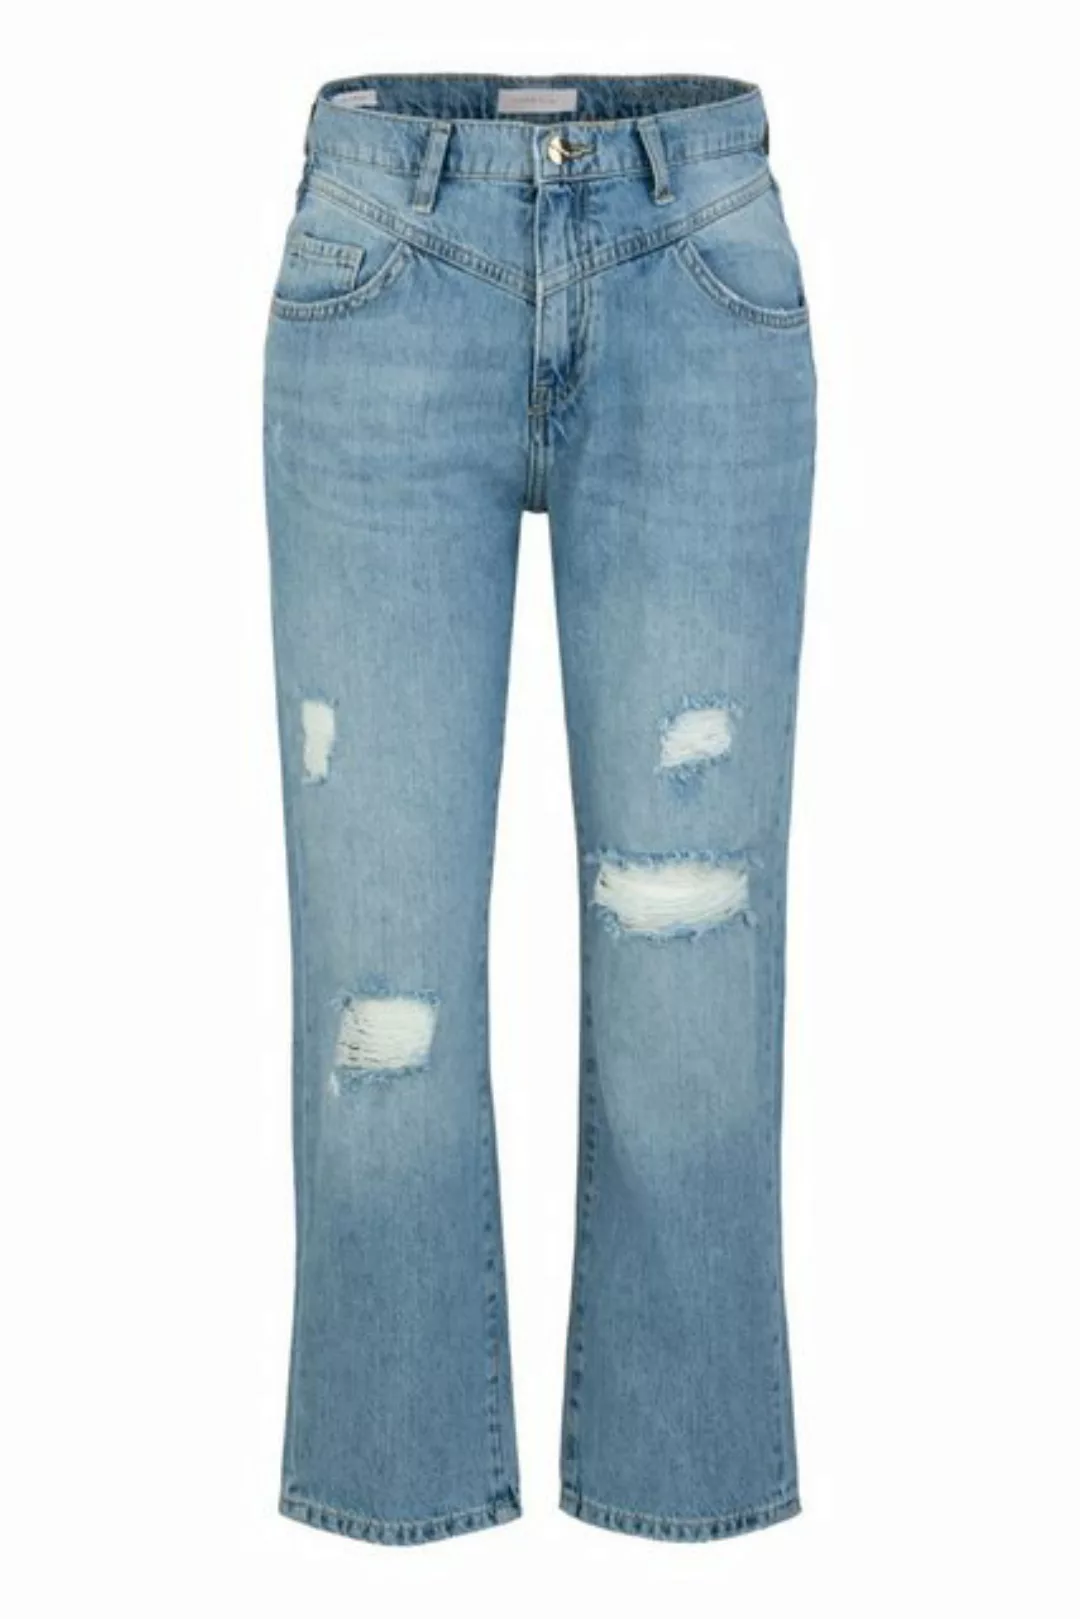 Rich & Royal 5-Pocket-Jeans vintage straight destroyed denim GOTS günstig online kaufen